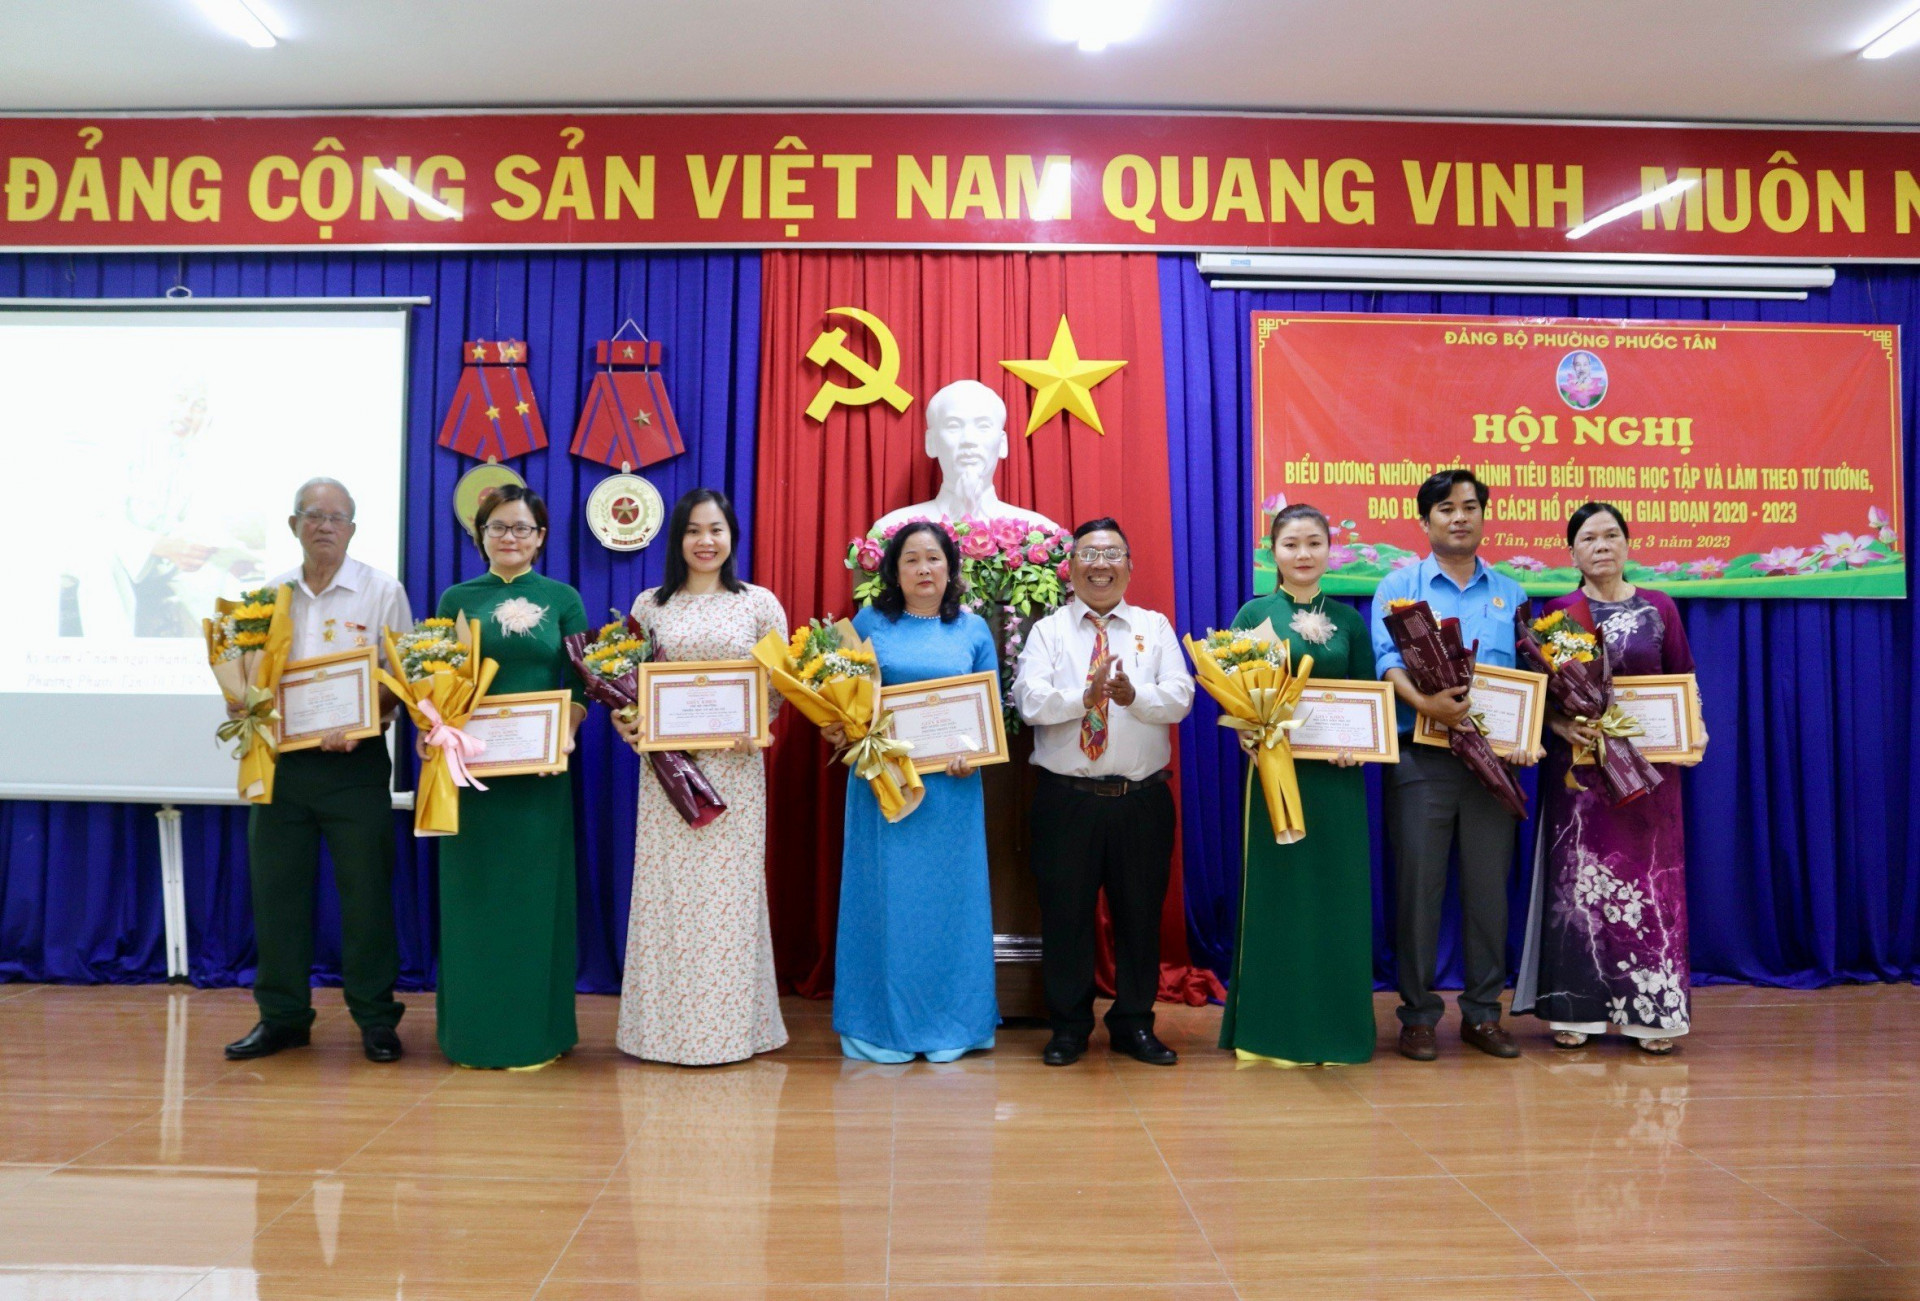 Ông Vũ Văn Nở - Bí thư Đảng ủy phường Phước Tân tặng giấy khen cho 7 tập thể có thành tích trong Học tập và làm theo tư tưởng, đạo đức, phong cách Hồ Chí Minh giai đoạn 2020-2023.